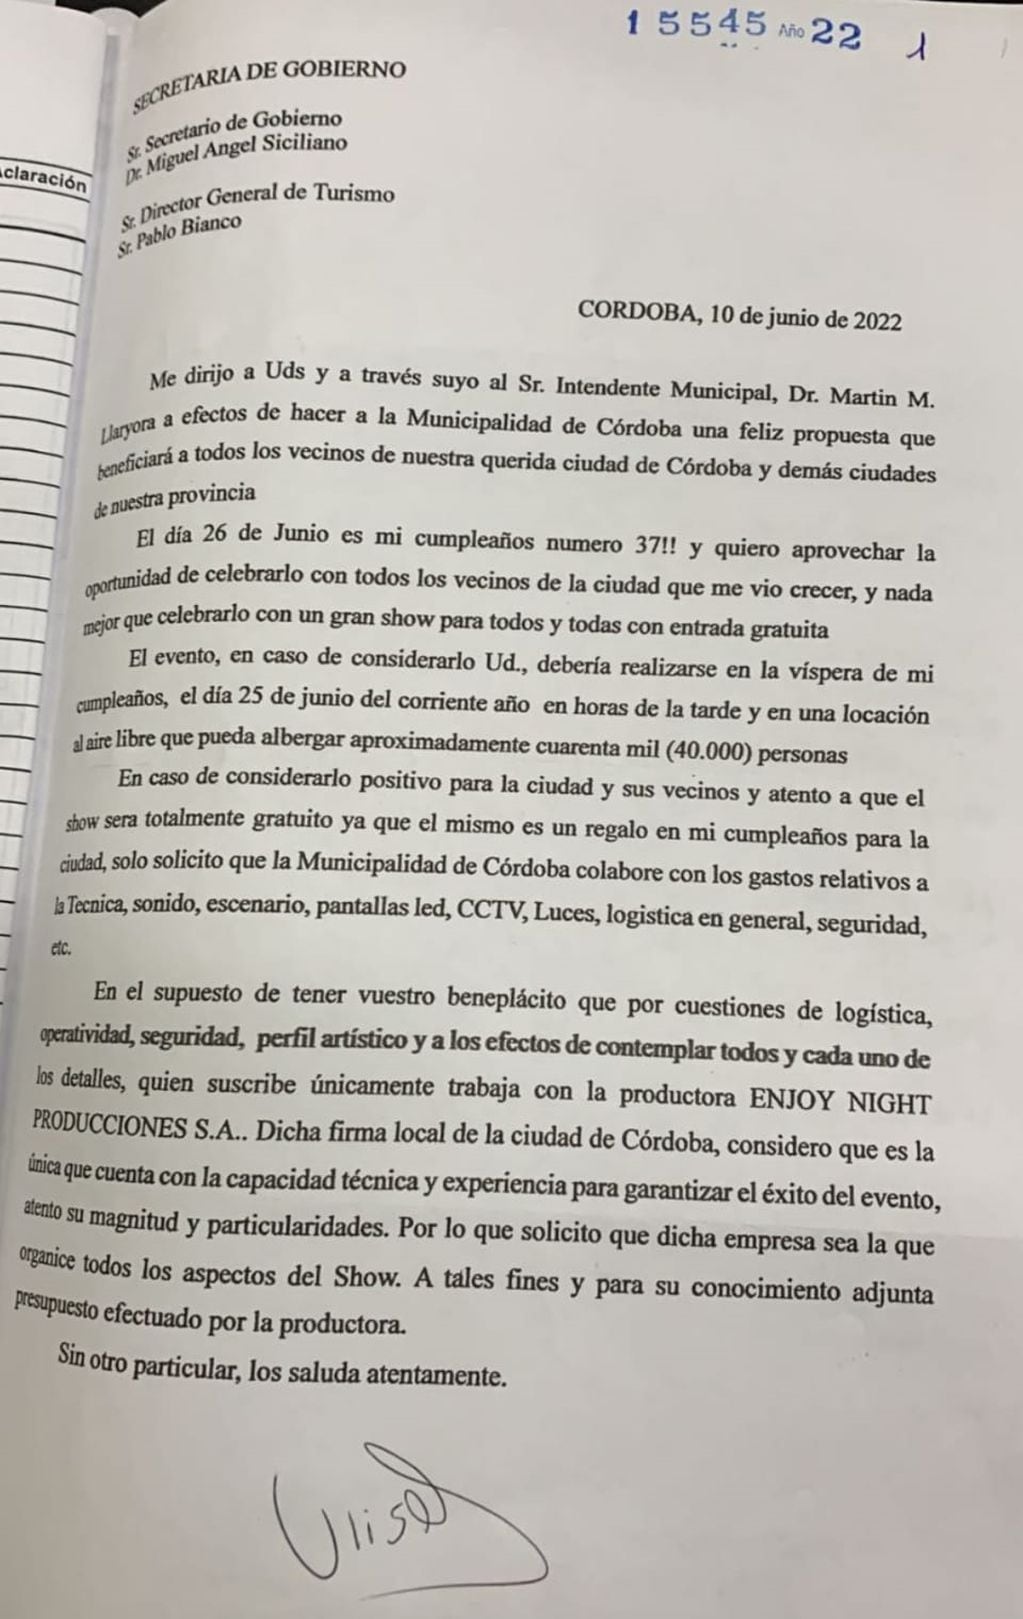 Nota de pedido del cuartetero a la Secretaría de Gobierno de la ciudad de Córdoba.